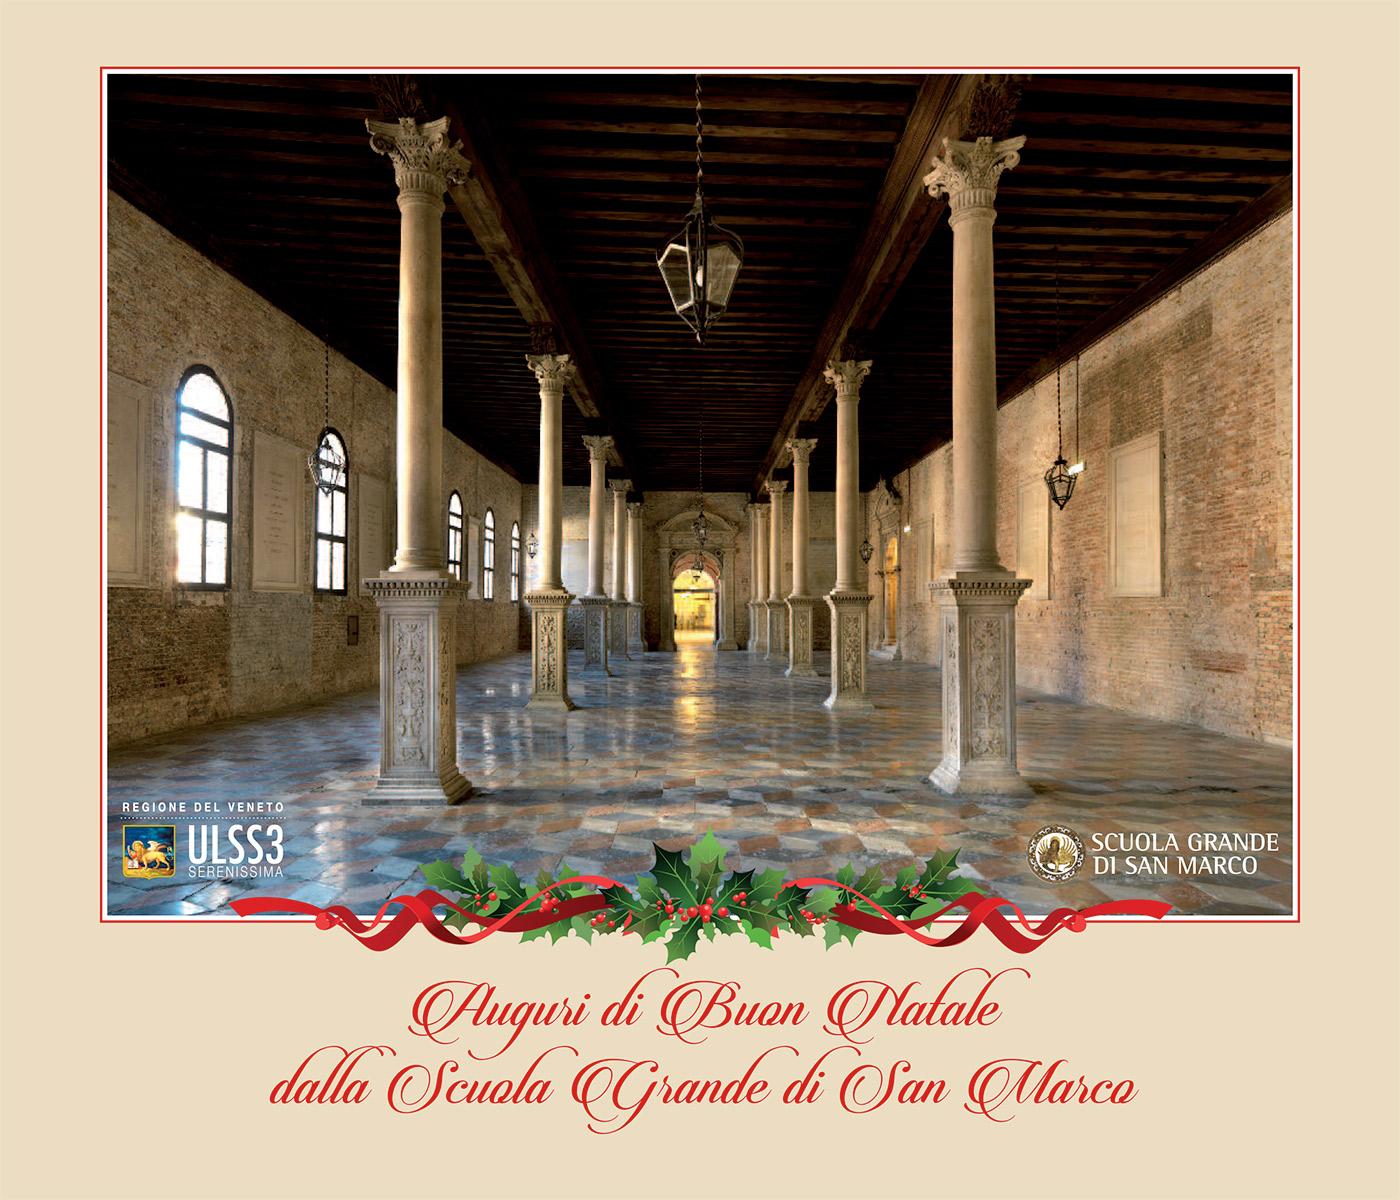 Auguri di Buon Natale dalla Scuola Grande di San Marco